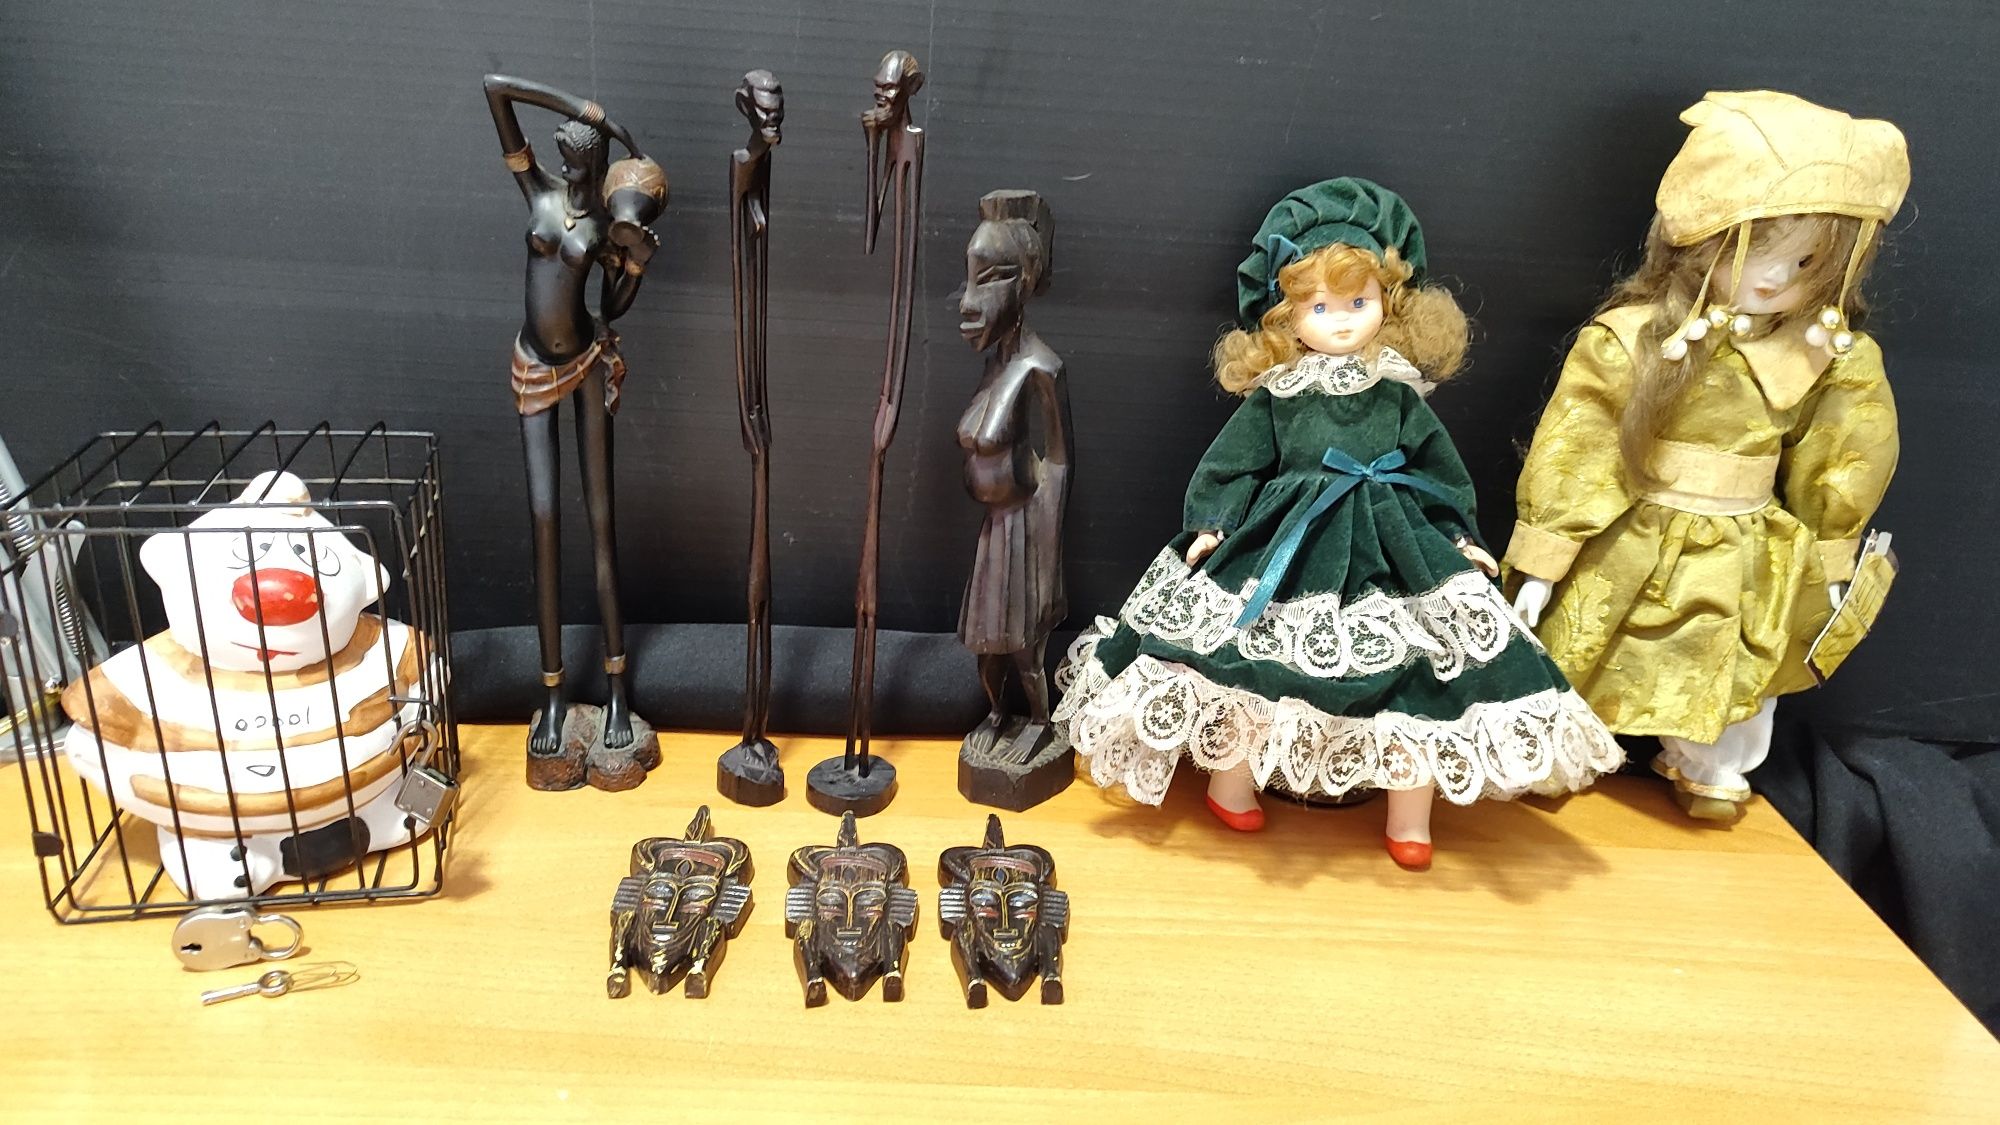 Esculturas pau preto, bonecas de porcelana, boneco de barro.